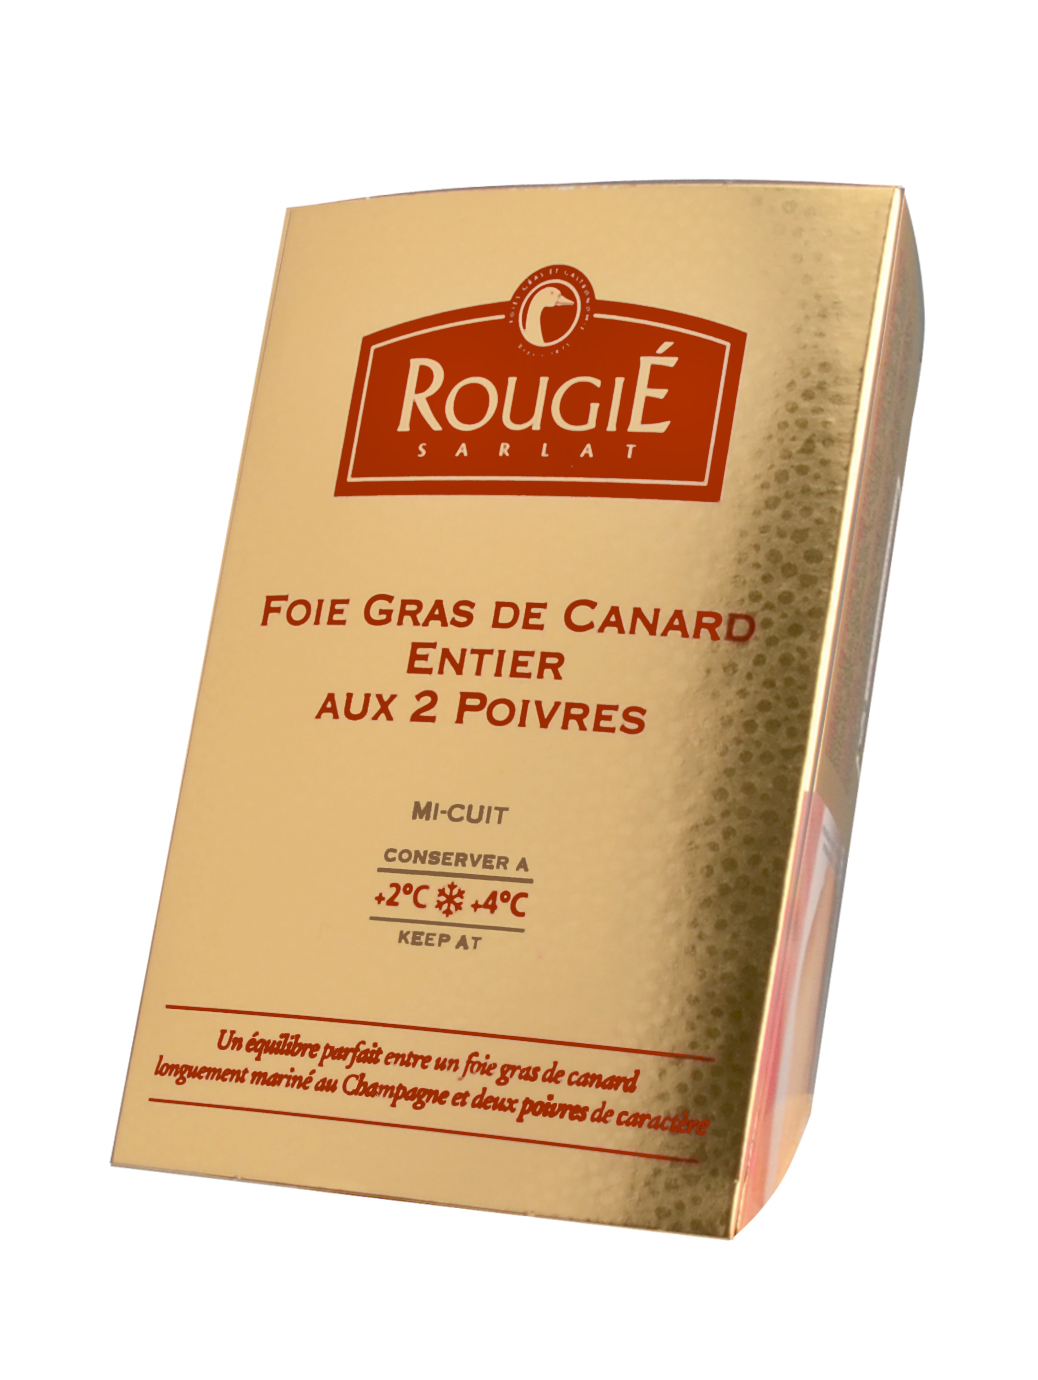 Foie gras de canard entier en semi-conserve - Foie gras Canoie